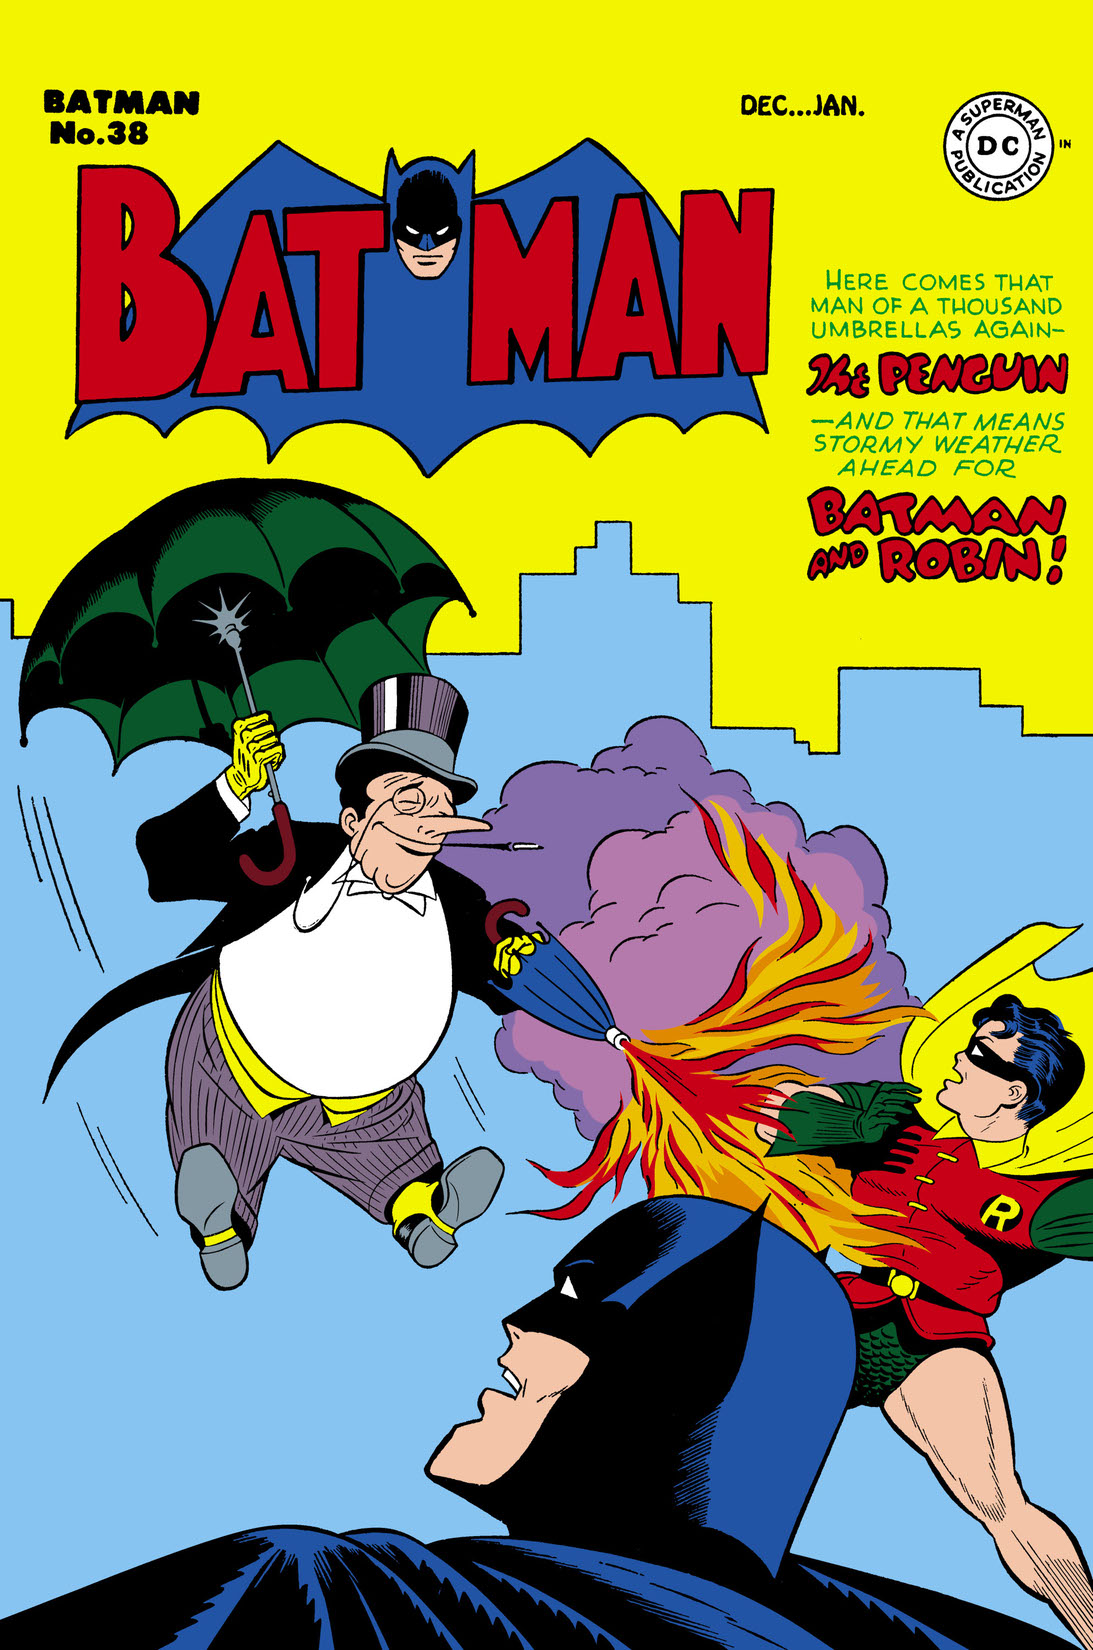 Batman (1940-) #38 preview images